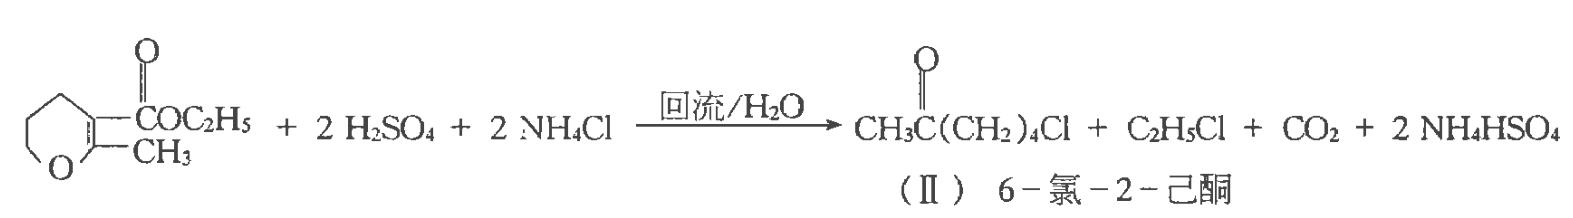 图1 6-氯-2-己酮合成反应式.png